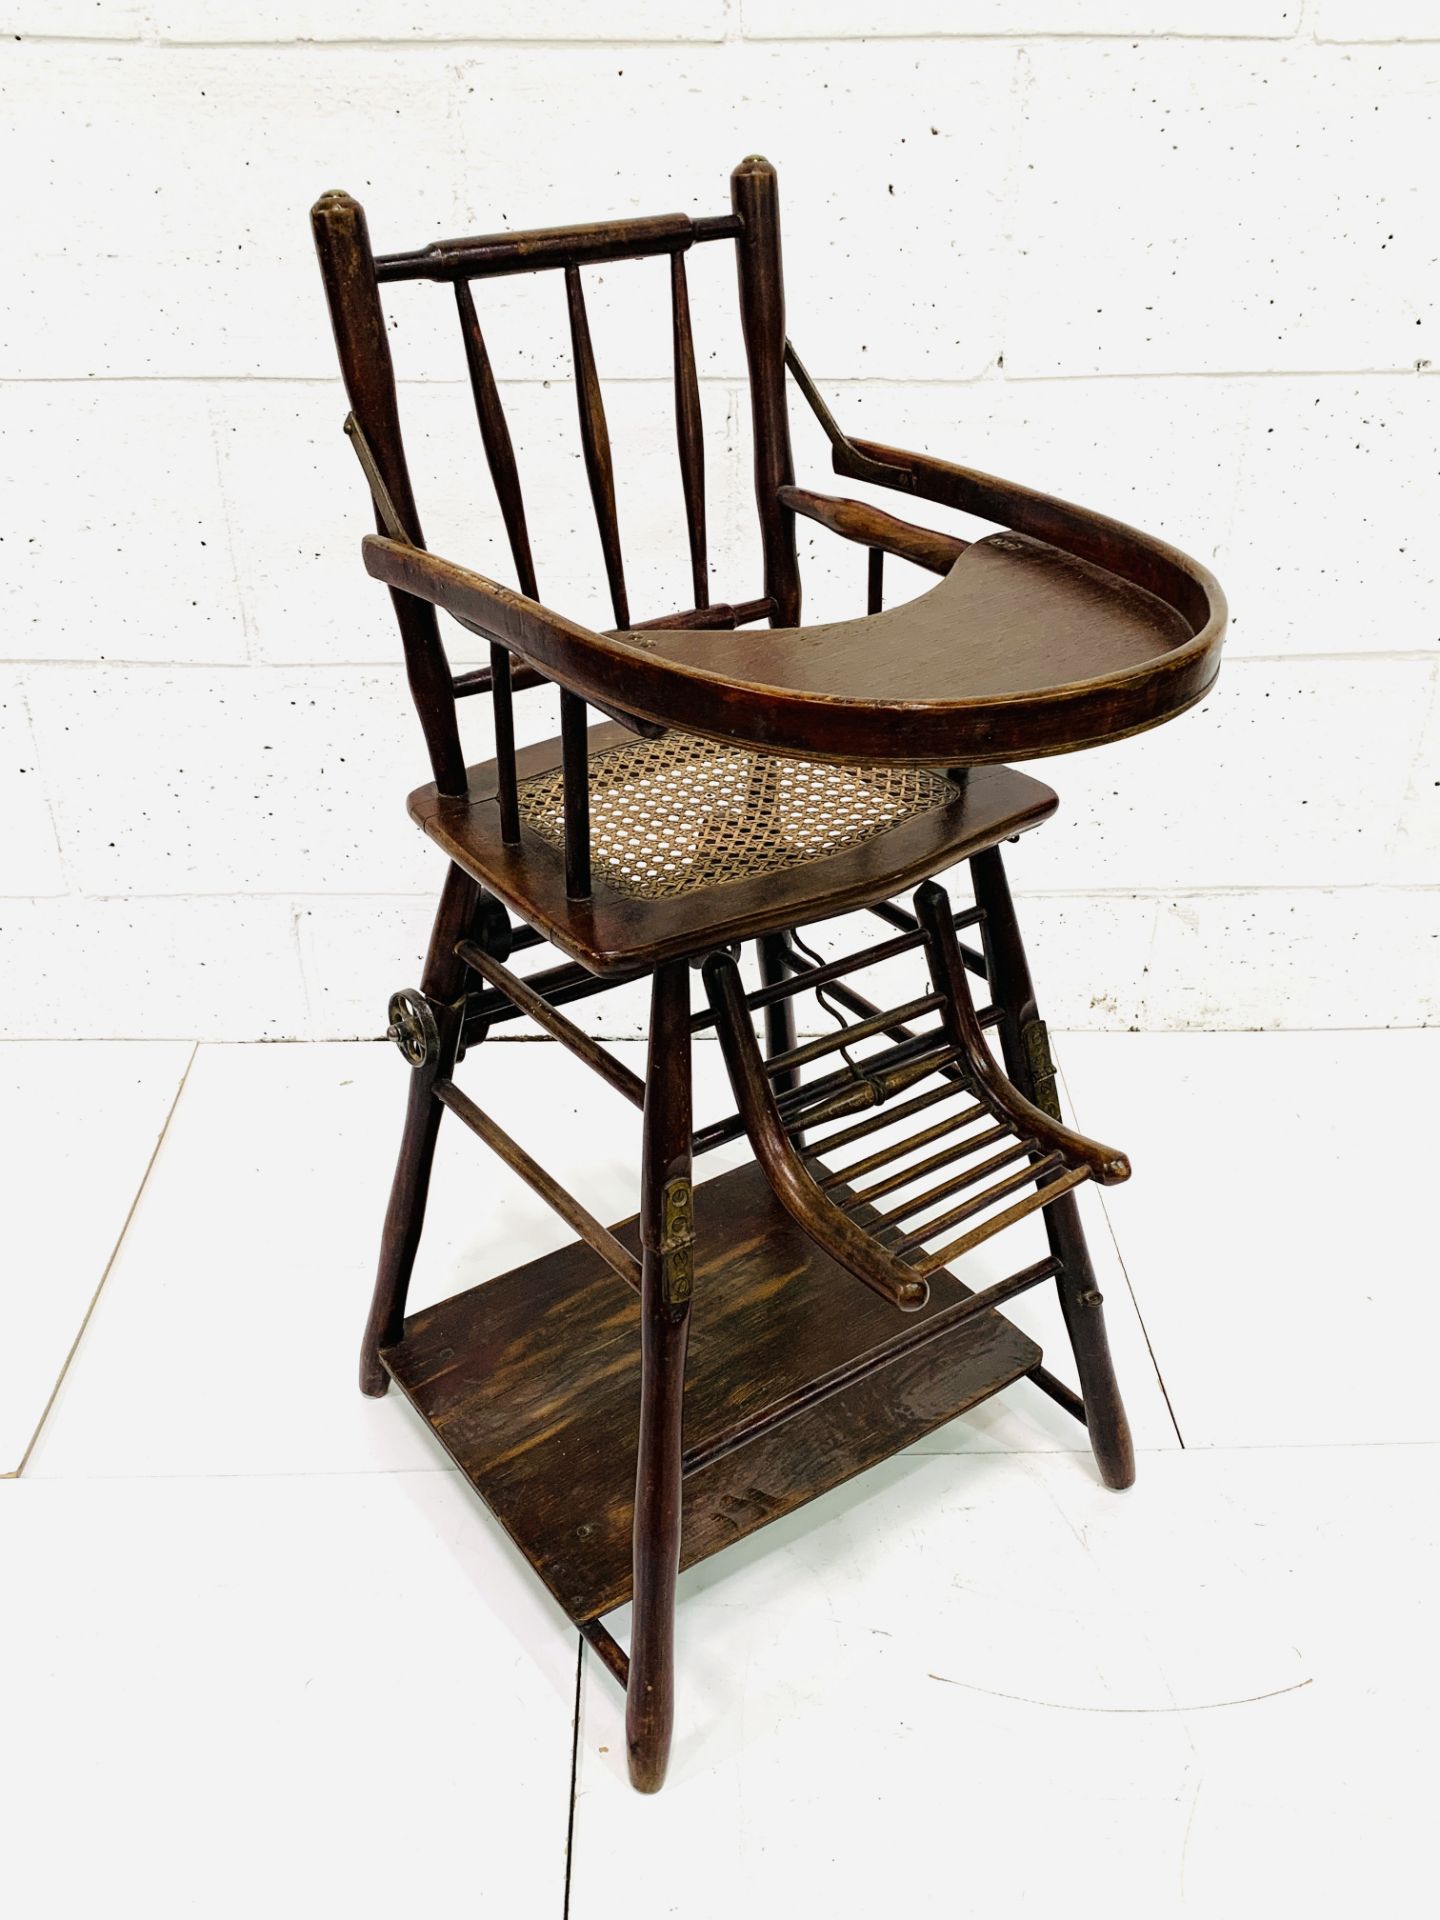 19th century Baumann & Co metamorphic high chair